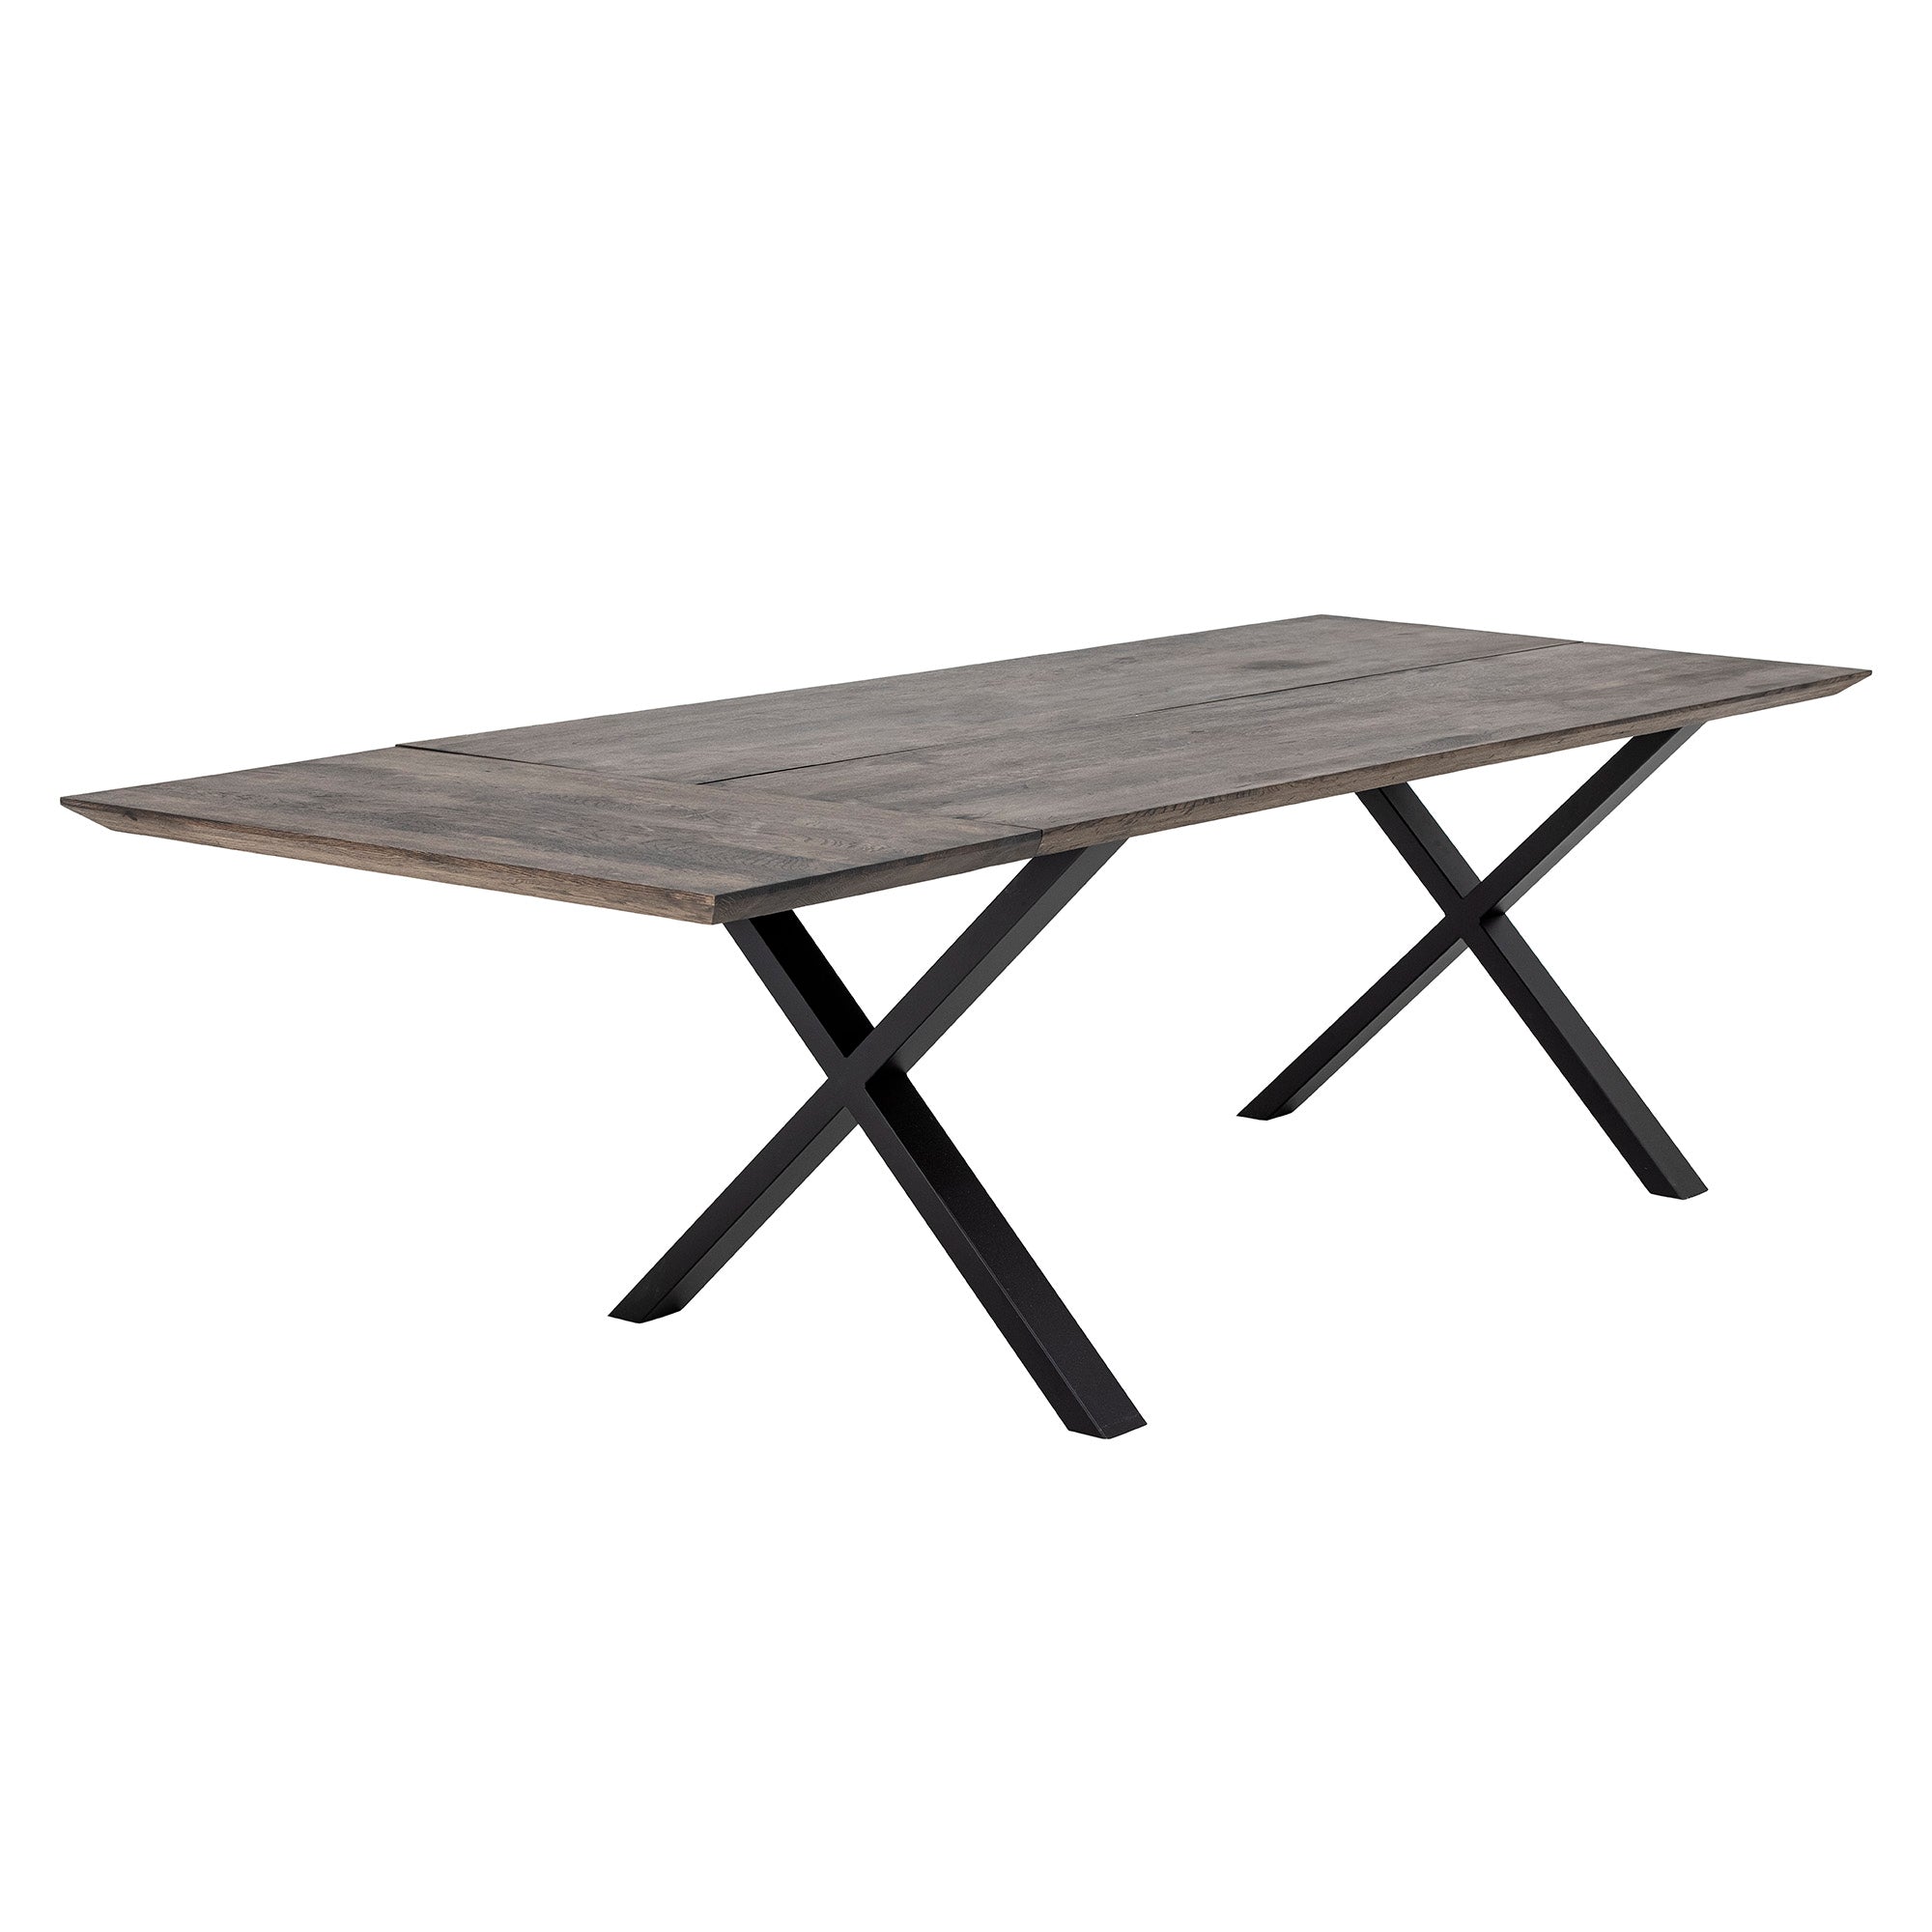 Maldon Extending Table Top, Braun, Eiche in Brown präsentiert im Onlineshop von KAQTU Design AG. Tischsystem Einzelteile ist von Bloomingville